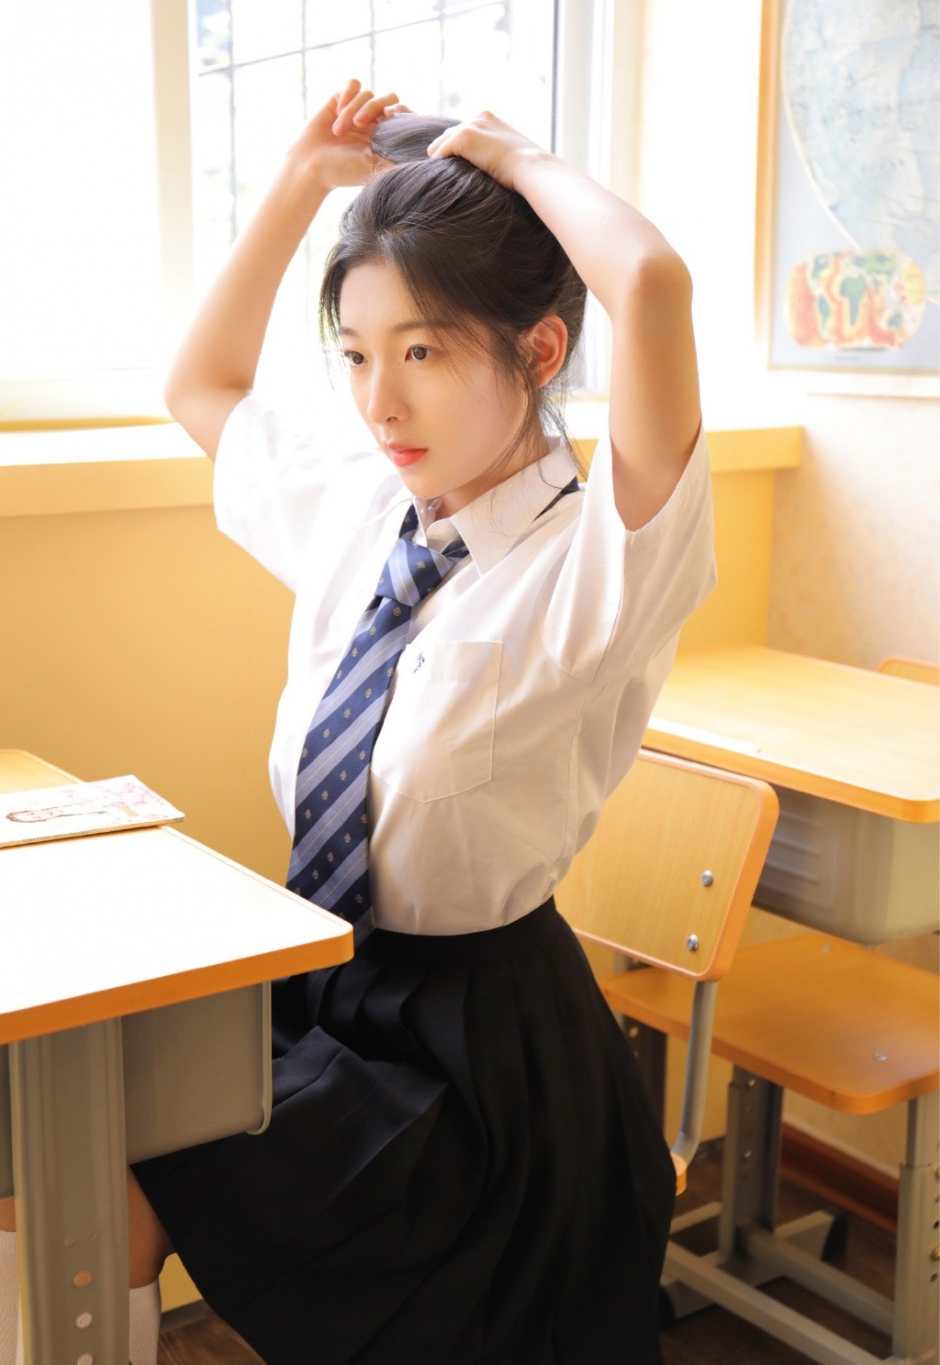 白衬衣美女学生日系jk制服飘逸长发气质淡雅教室写真图片